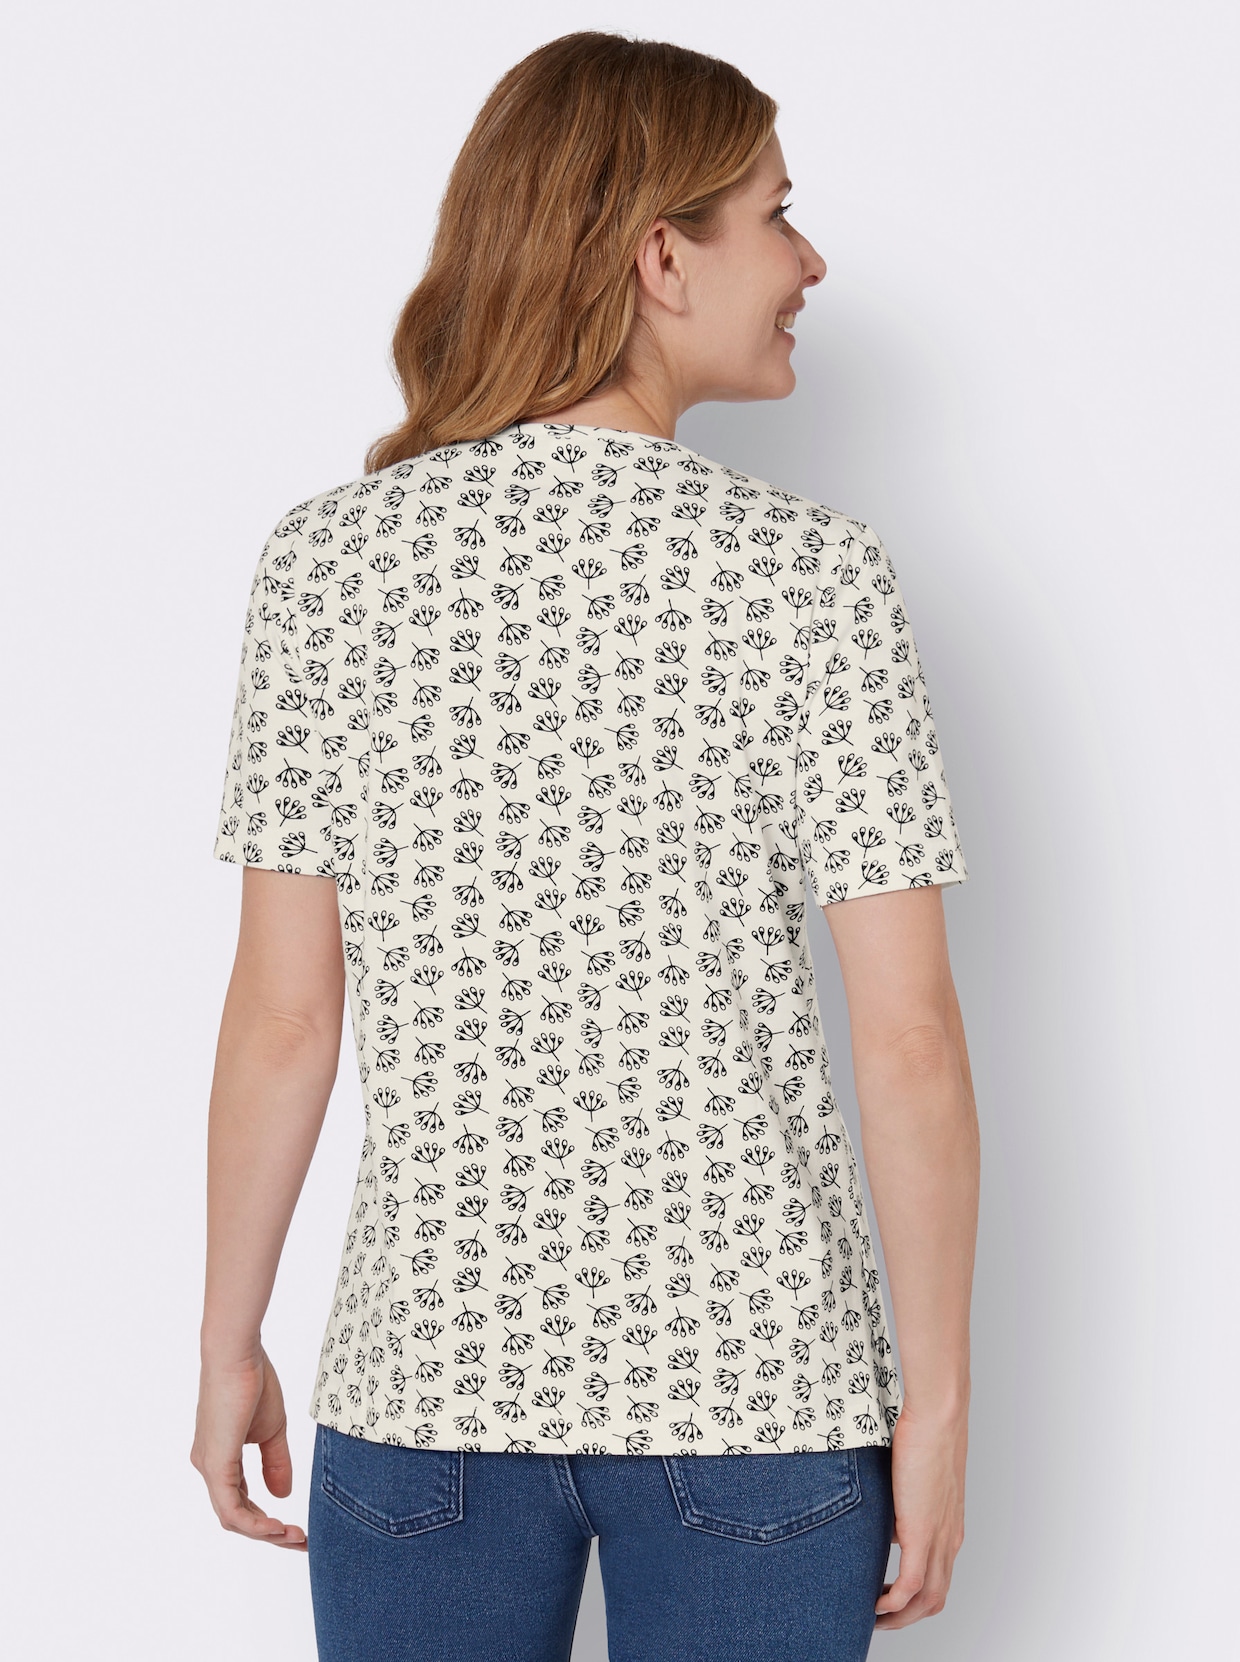 Bedrukt shirt - ecru/marine geprint